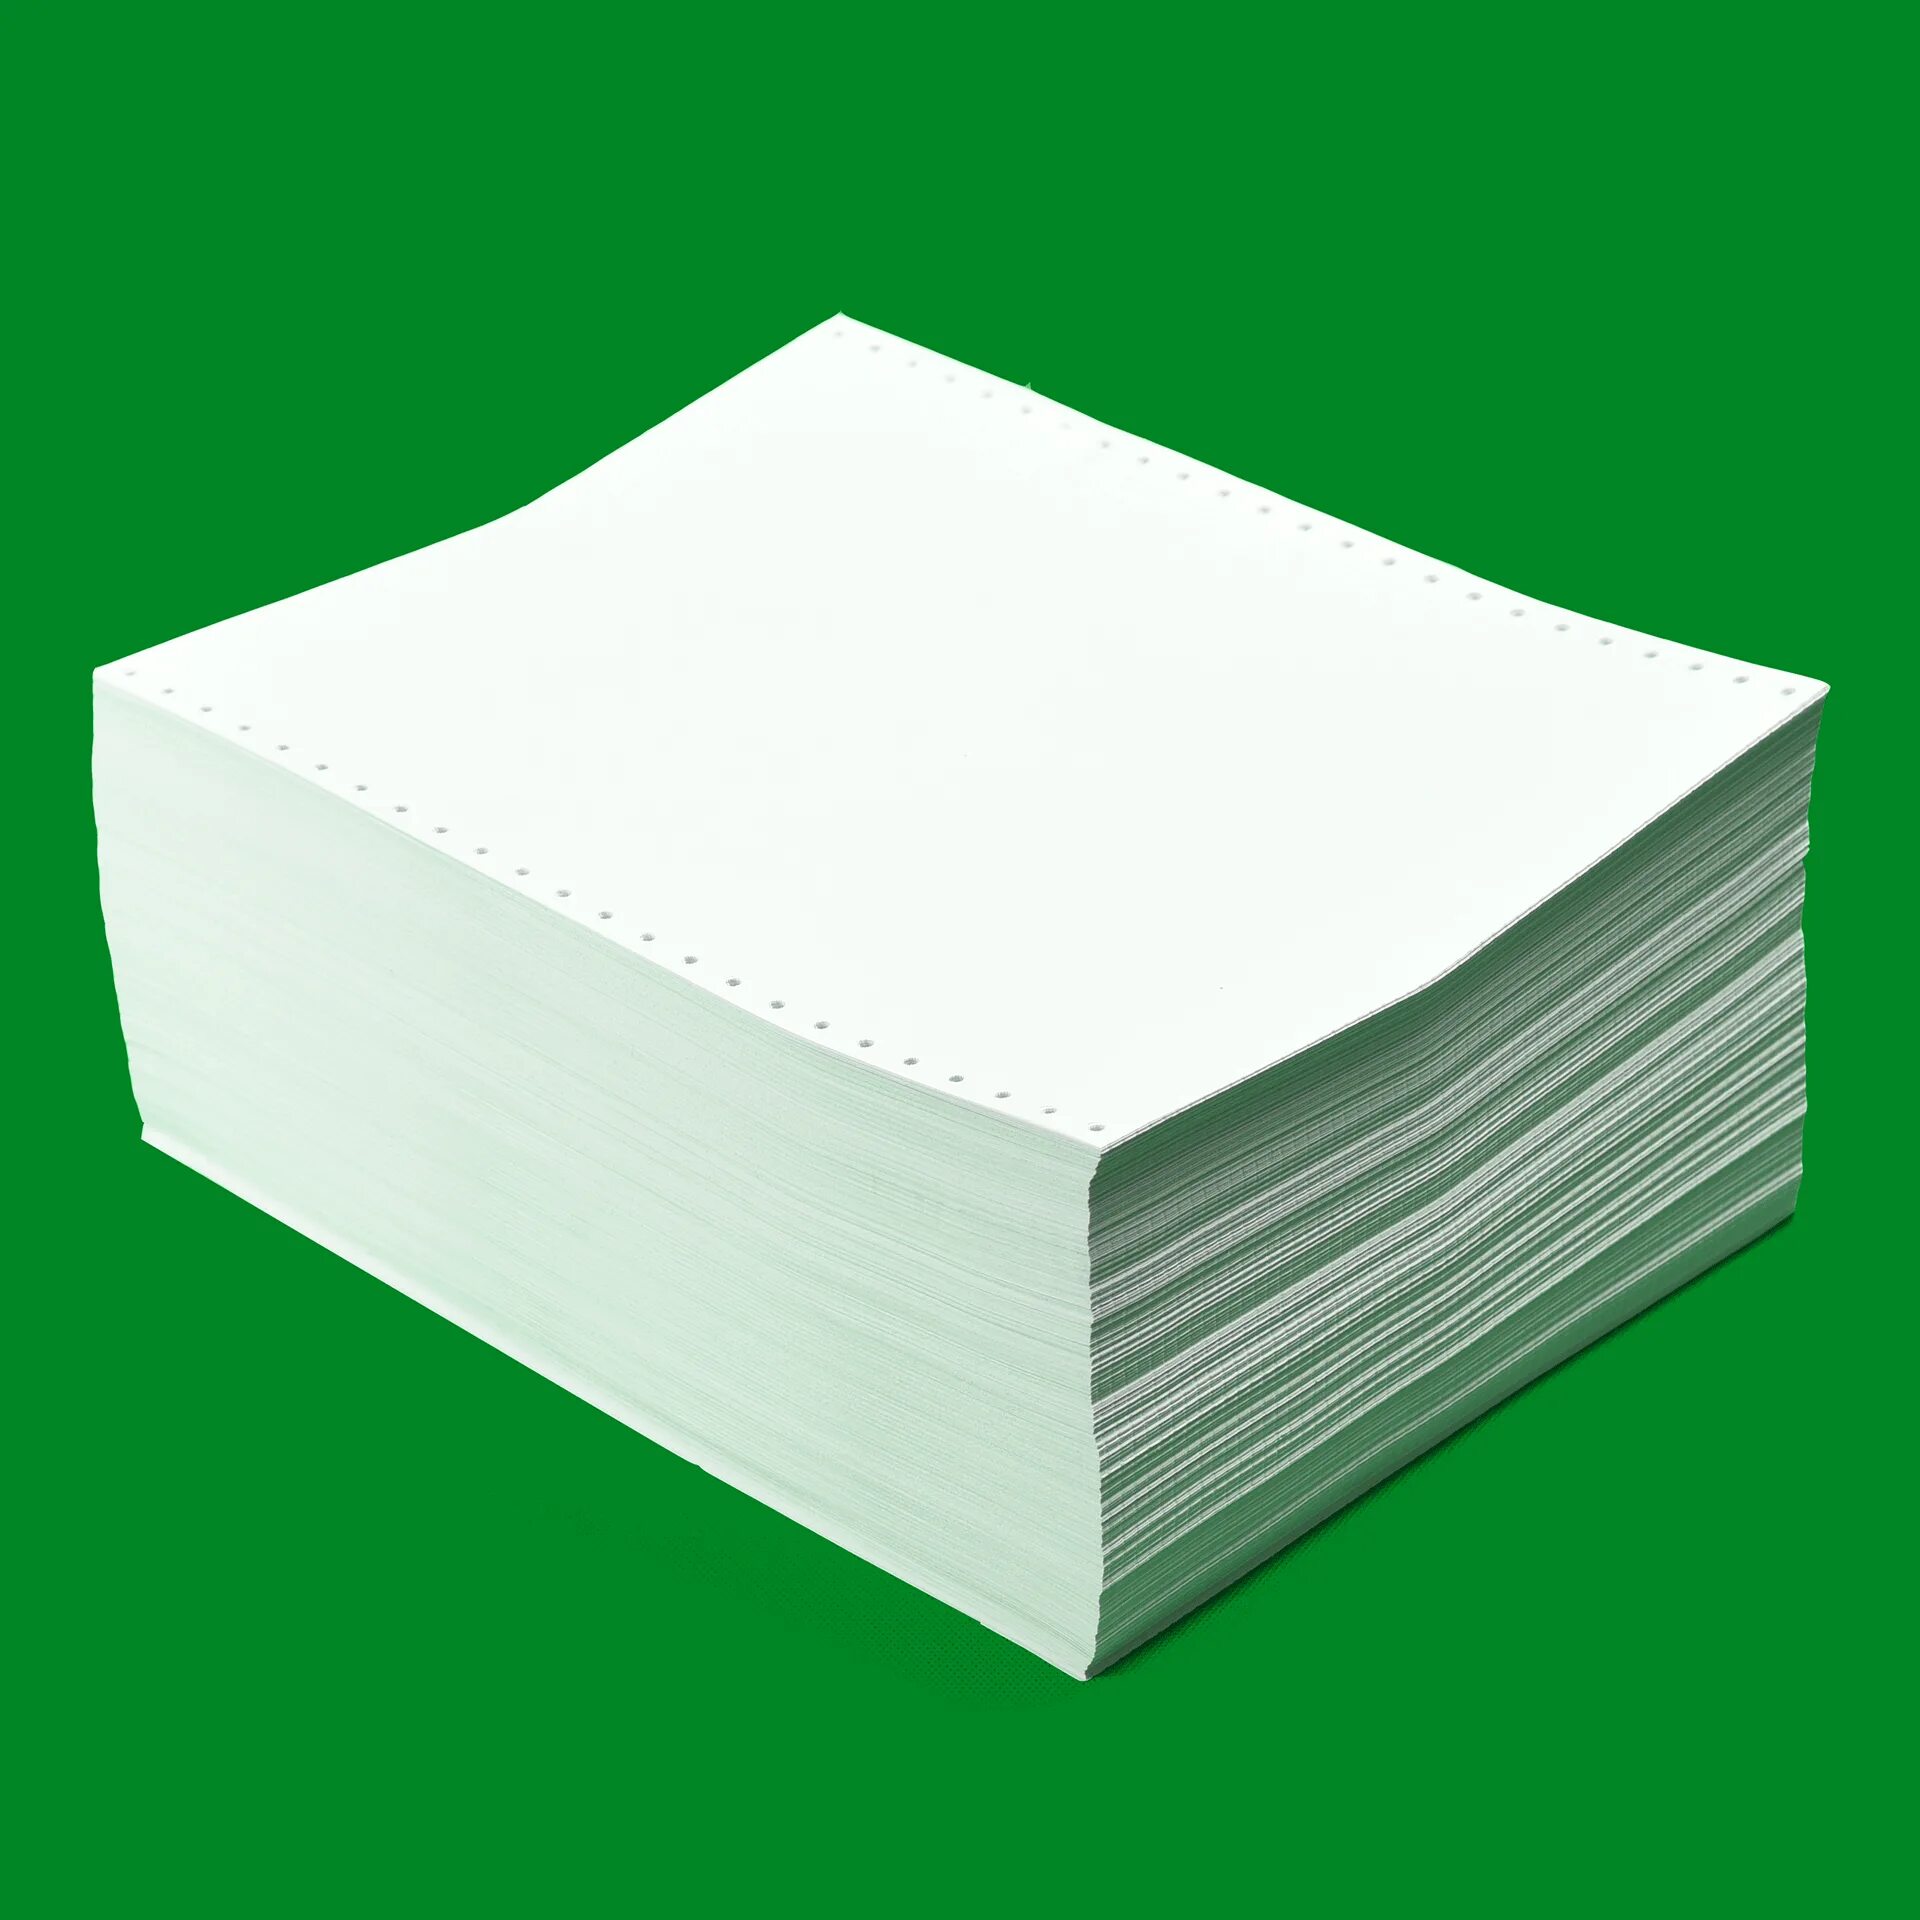 Бумага а4 (офсетная 80 г/м2) (myjos). Бумага а4 (офсетная 80 г/м2) (Gustavsberg). Офсетная бумага а4 1600мм. Офсетная бумага 80 г/м2. Что такое офсетная бумага